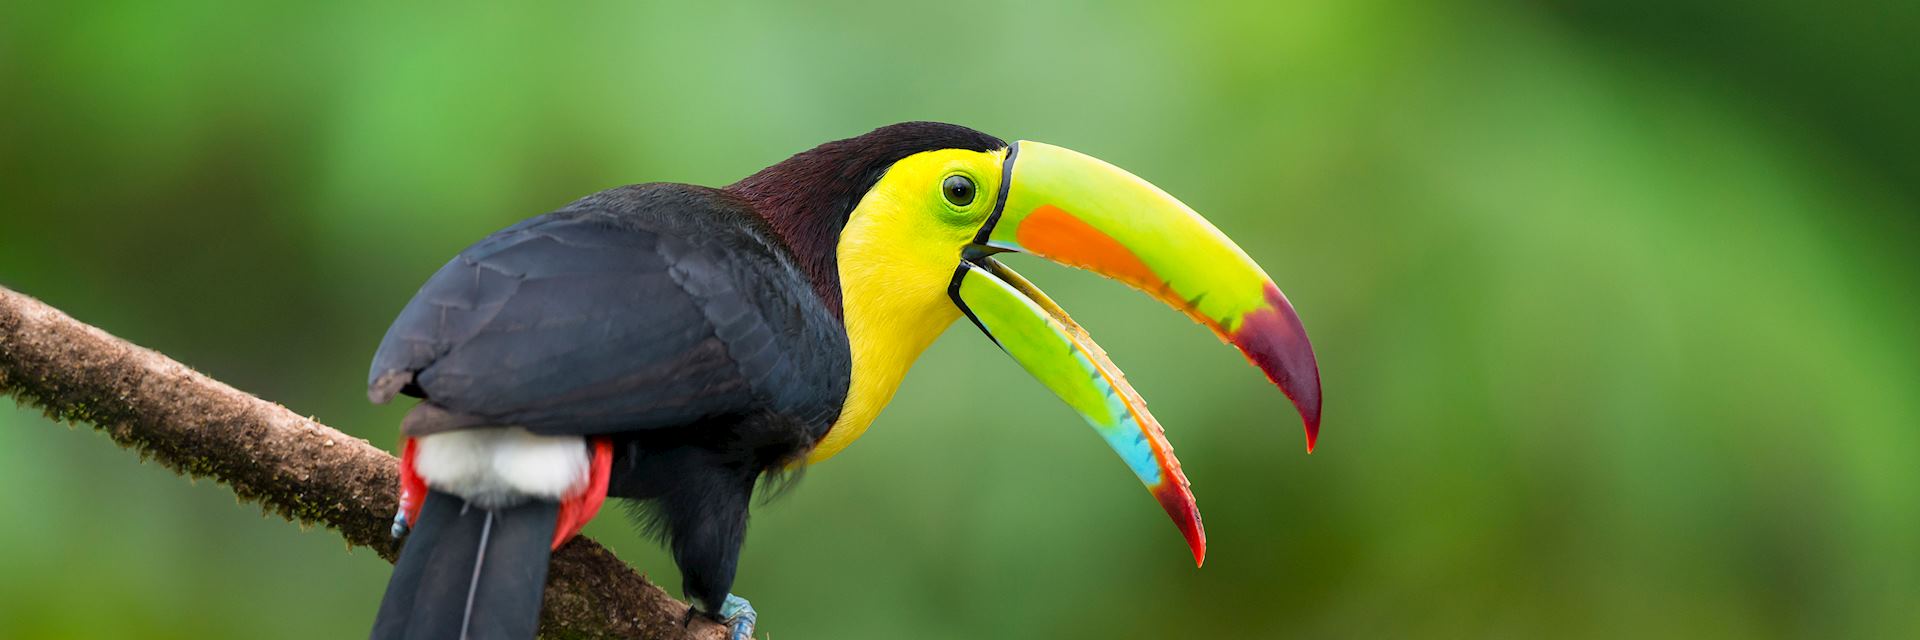 Keel-billed toucan in Belize